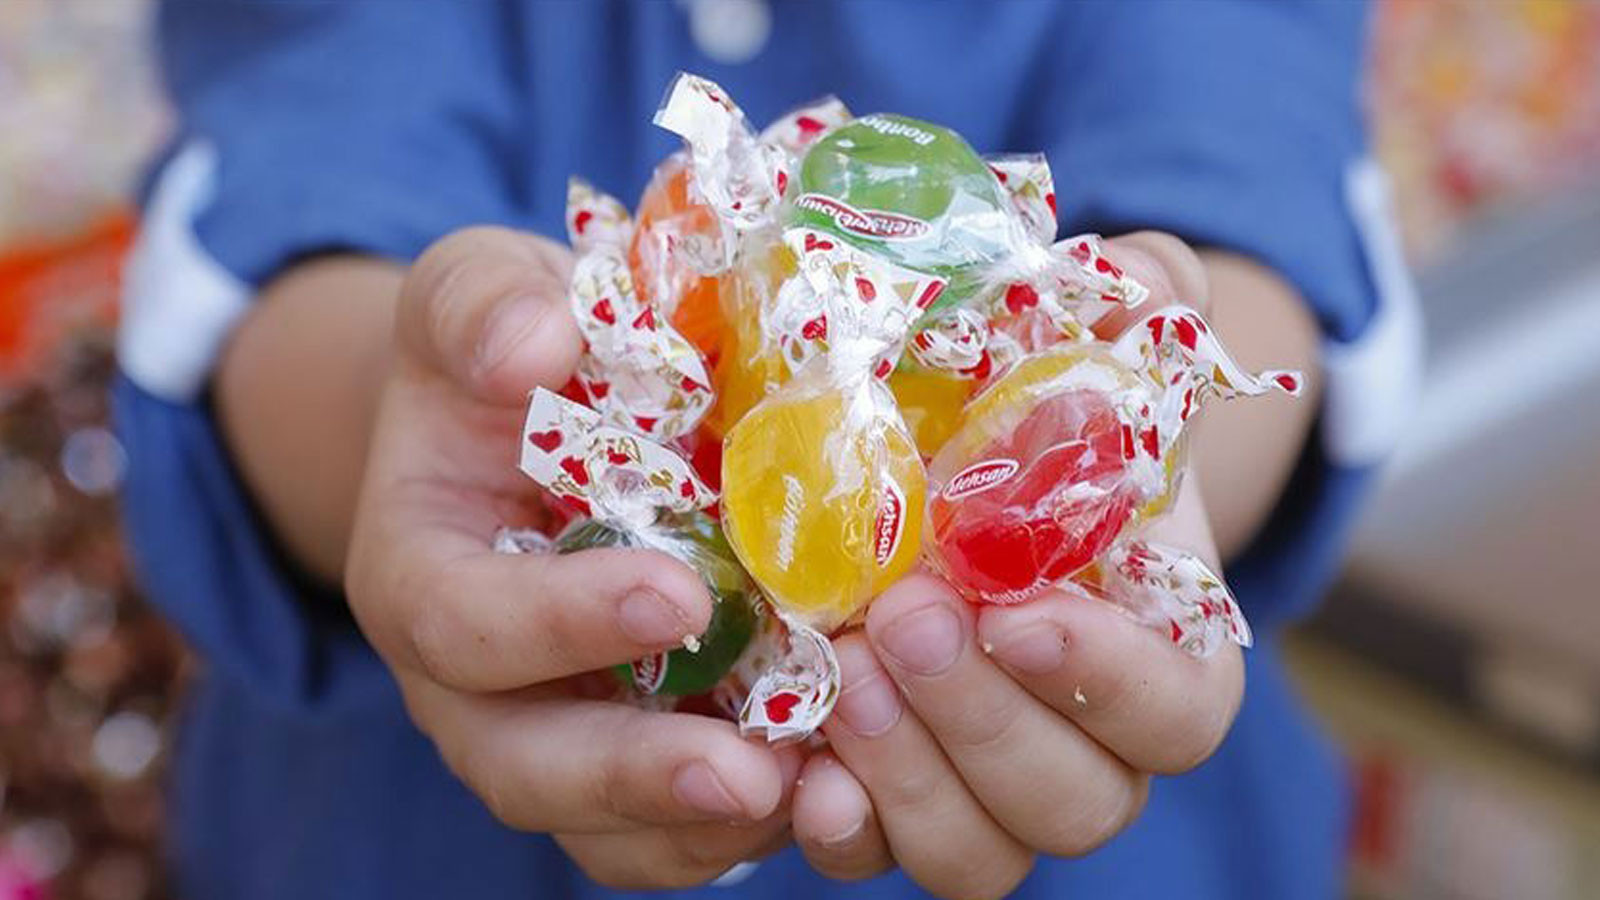 Glutensiz bayram şekeri markaları nelerdir? Hangi şekerler glutensiz?